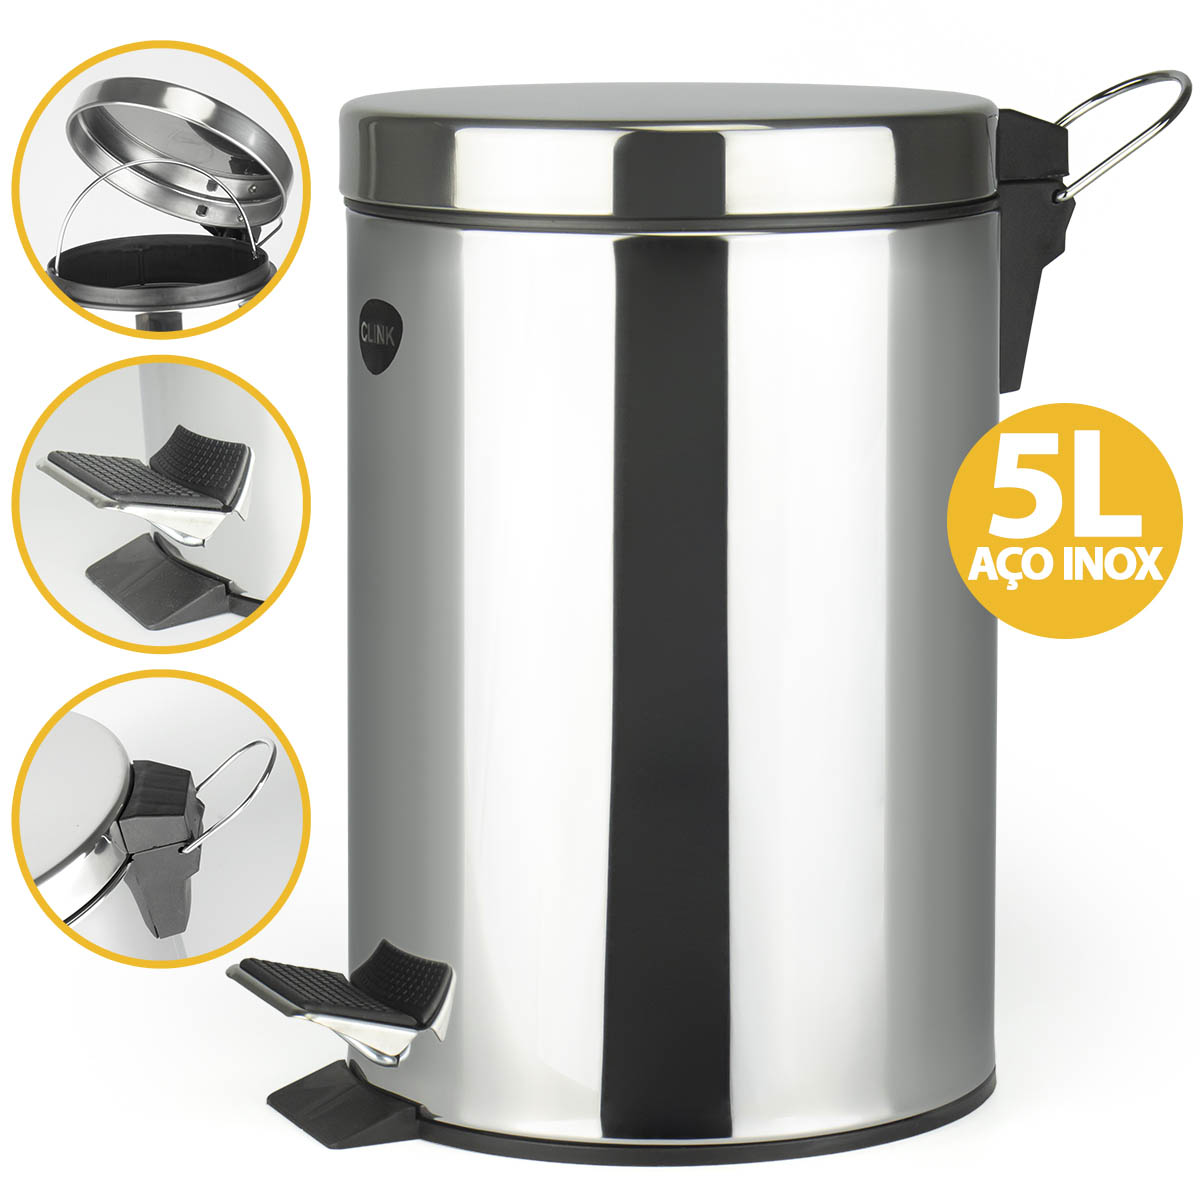 Lixeira Inox 5 Litros Balde Interno p/ Lixo Pedal Antiderrapante Cesto para Entulho Lavável Aço Inox Cozinha Banheiro